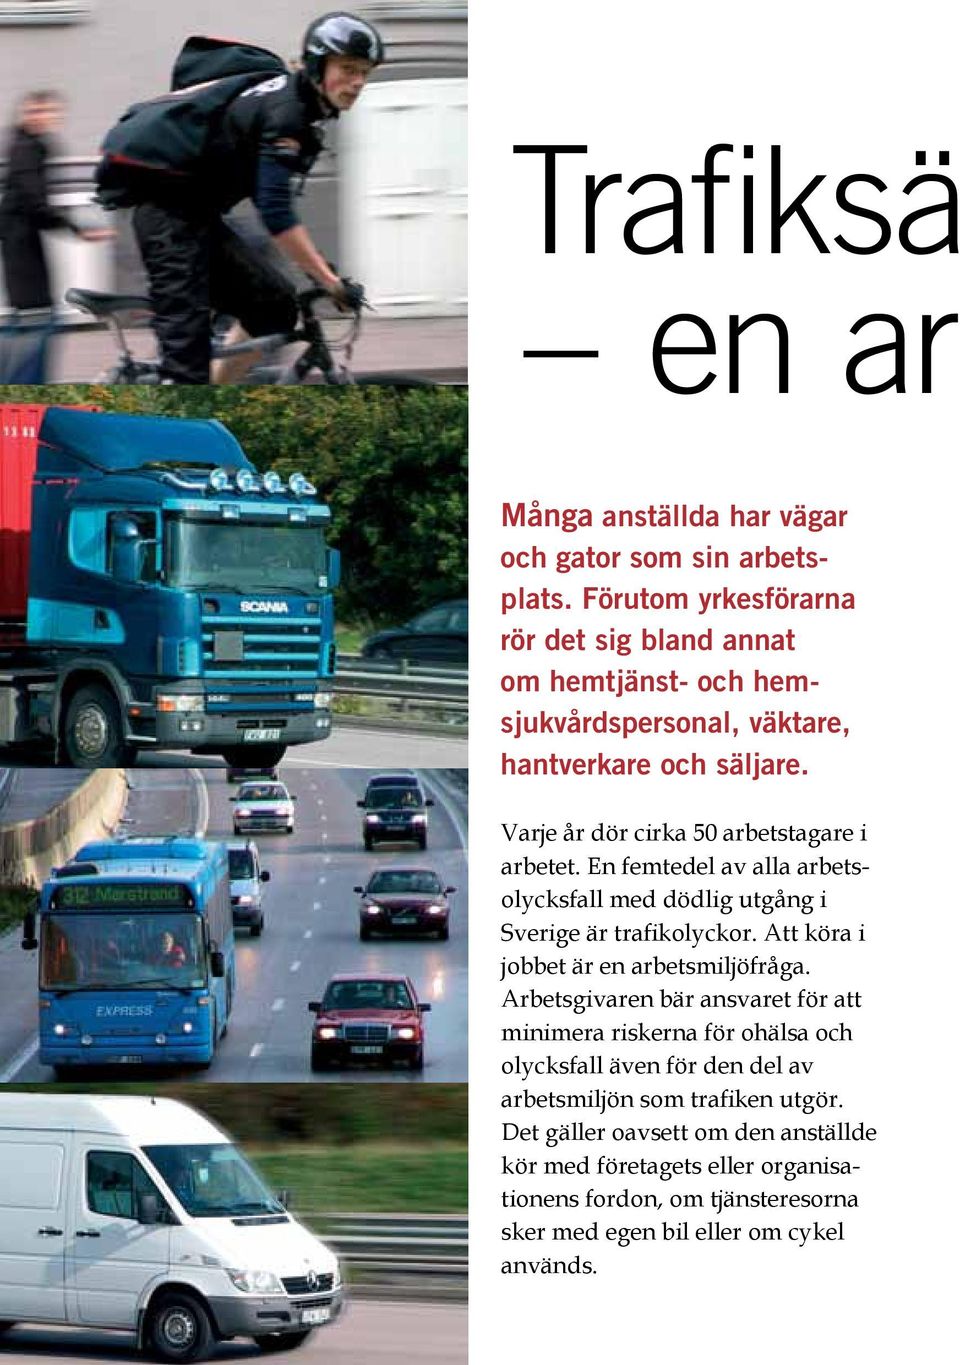 Varje år dör cirka 50 arbetstagare i arbetet. En femtedel av alla arbetsolycksfall med dödlig utgång i Sverige är trafikolyckor.